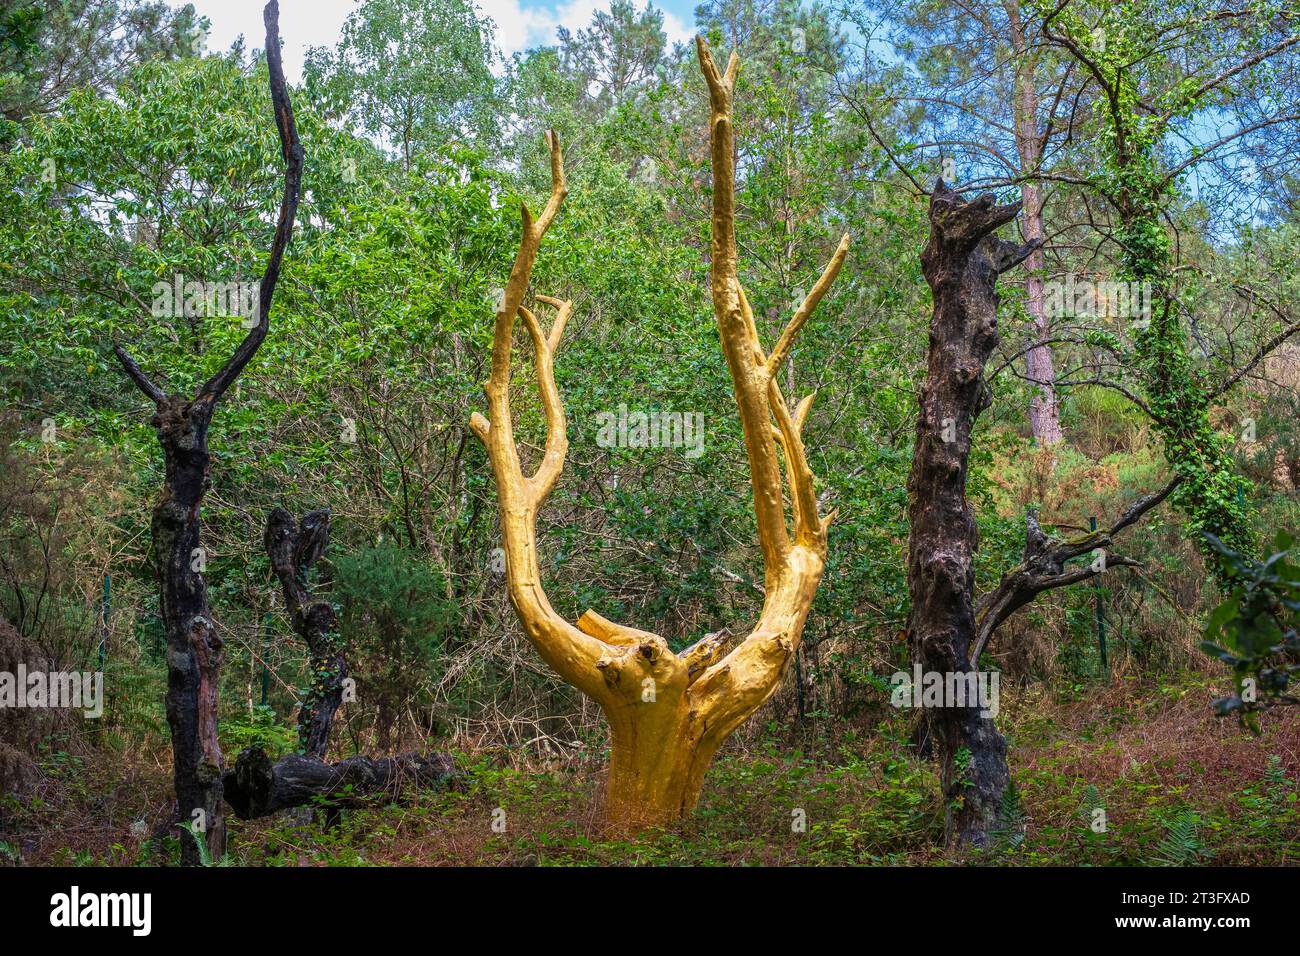 Frankreich, Morbihan, Broceliande Forest, Trehorenteuc, Val Sans Retour, der Goldene Baum, der 1991 von Francois Davin nach einem Brand geschaffen wurde, ein Baum, der mit echten goldenen Blättern bedeckt ist, der die Wiedergeburt des Waldes symbolisiert, aber auch seinen zerbrechlichen und kostbaren Charakter Stockfoto